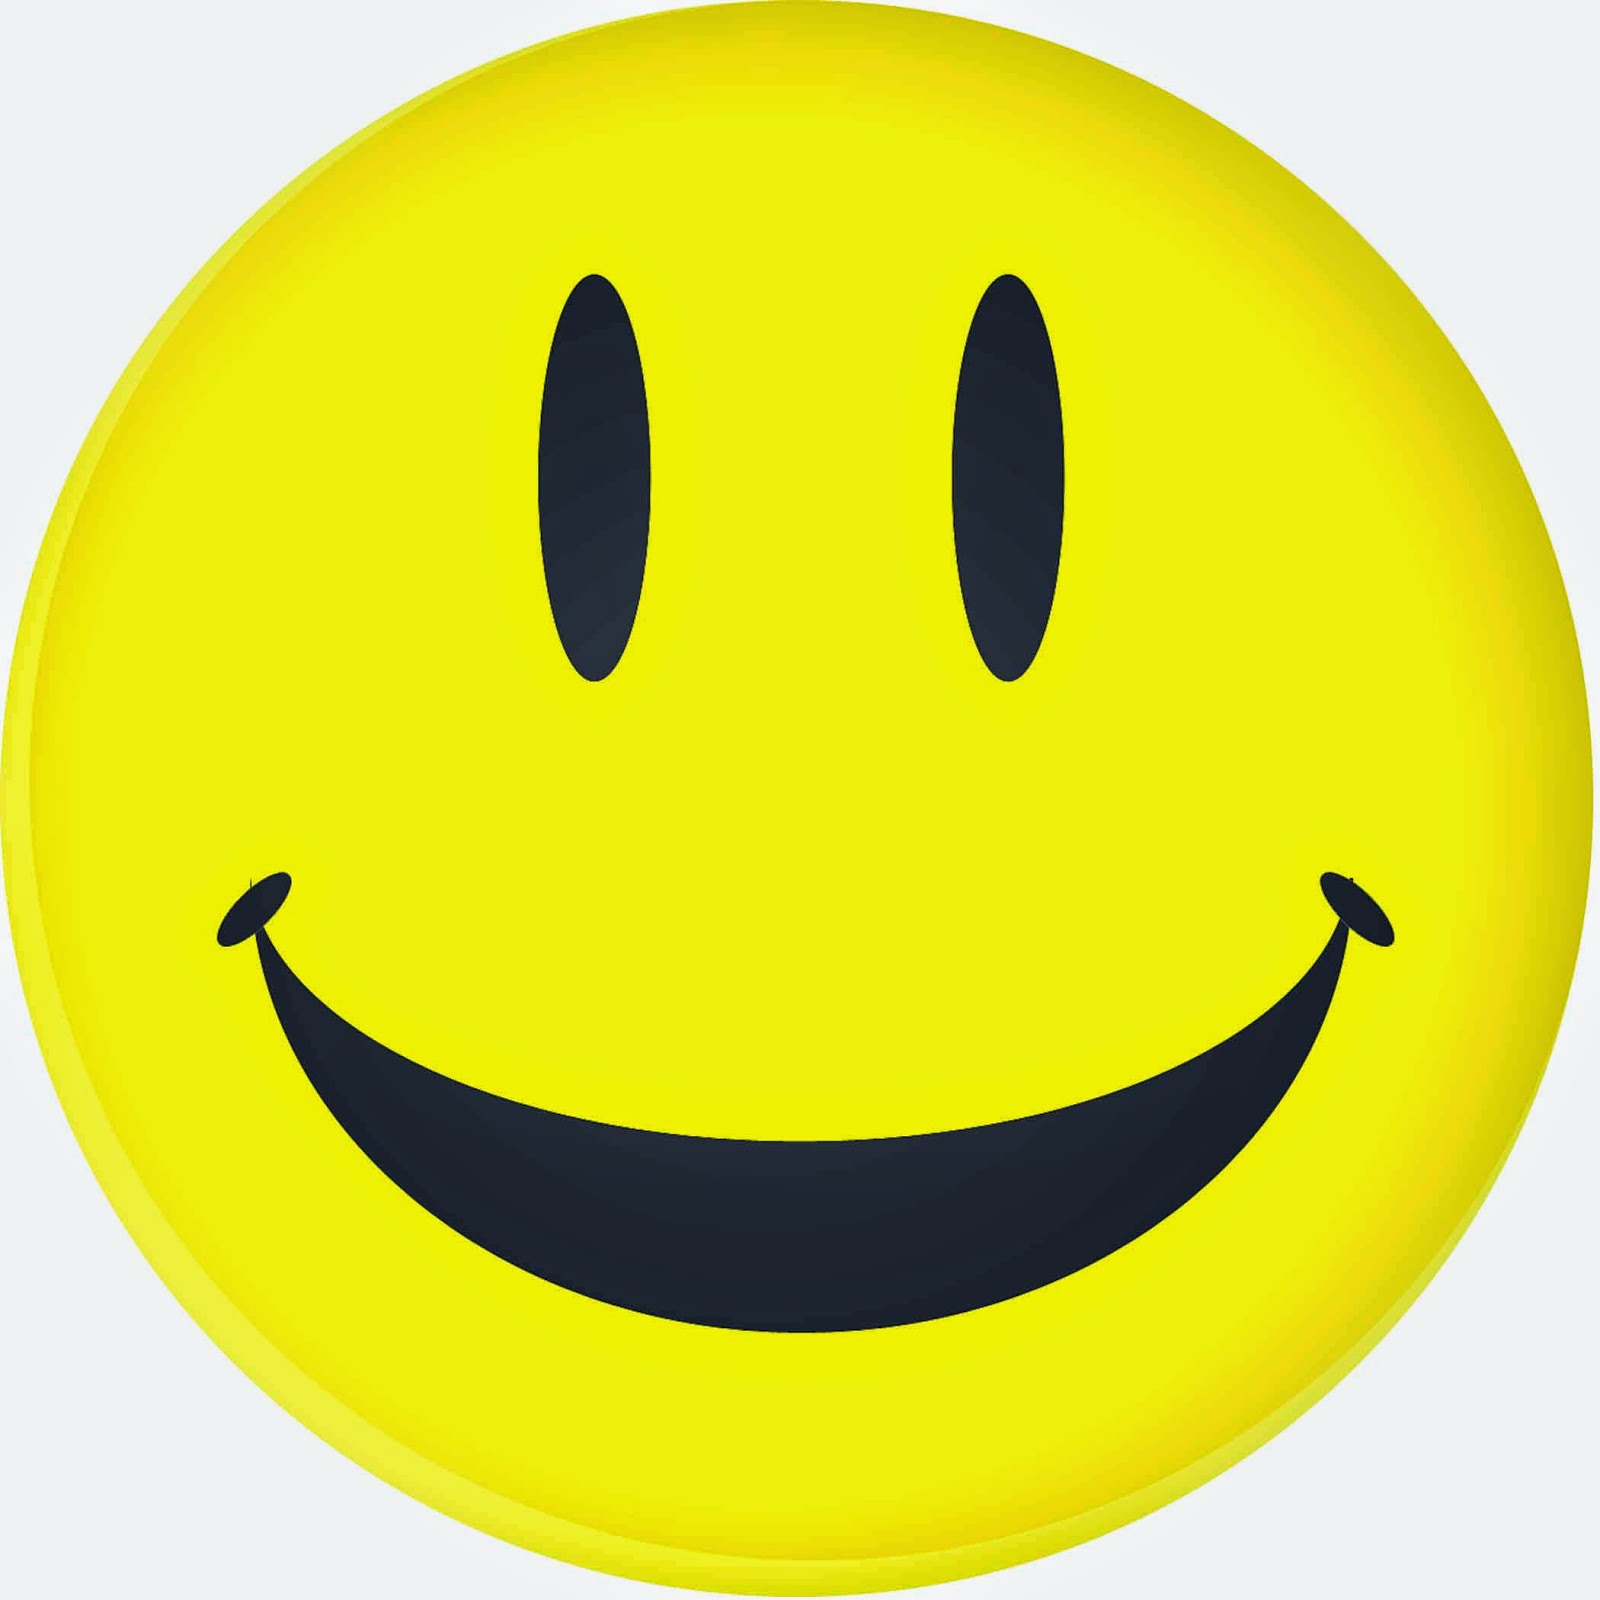 Smiley Face Symbols Smiley Face Text Smiley Face Killer Smiley Face